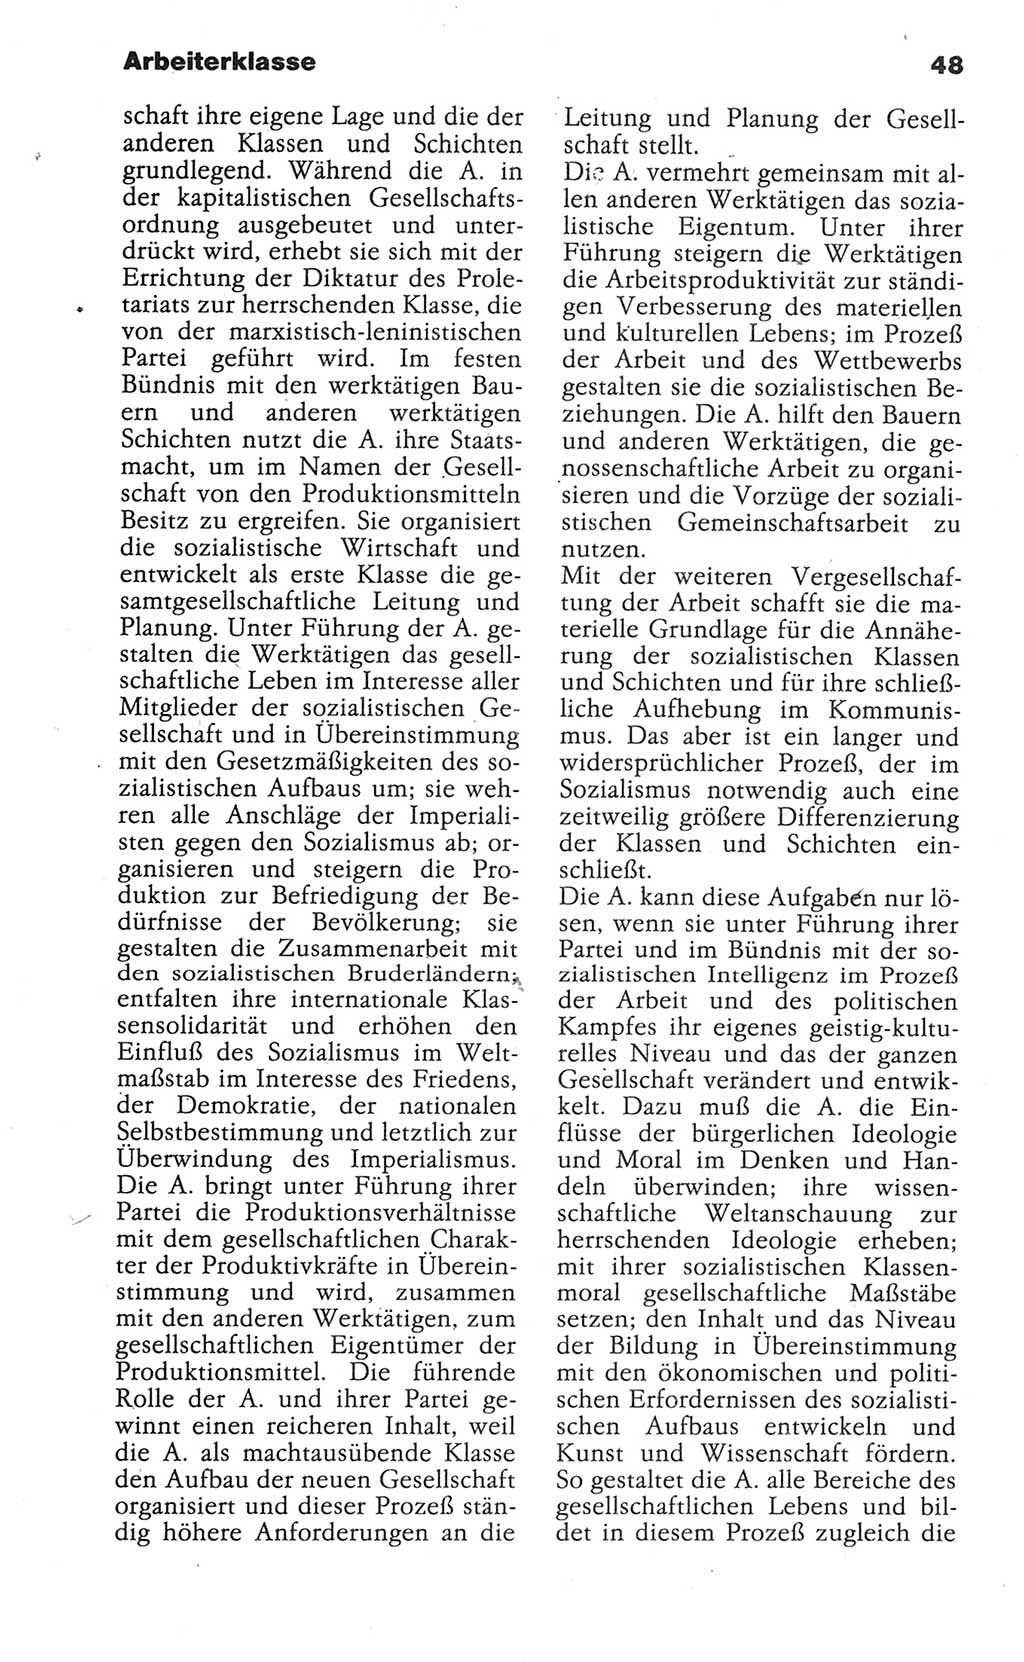 Wörterbuch der marxistisch-leninistischen Philosophie [Deutsche Demokratische Republik (DDR)] 1986, Seite 48 (Wb. ML Phil. DDR 1986, S. 48)